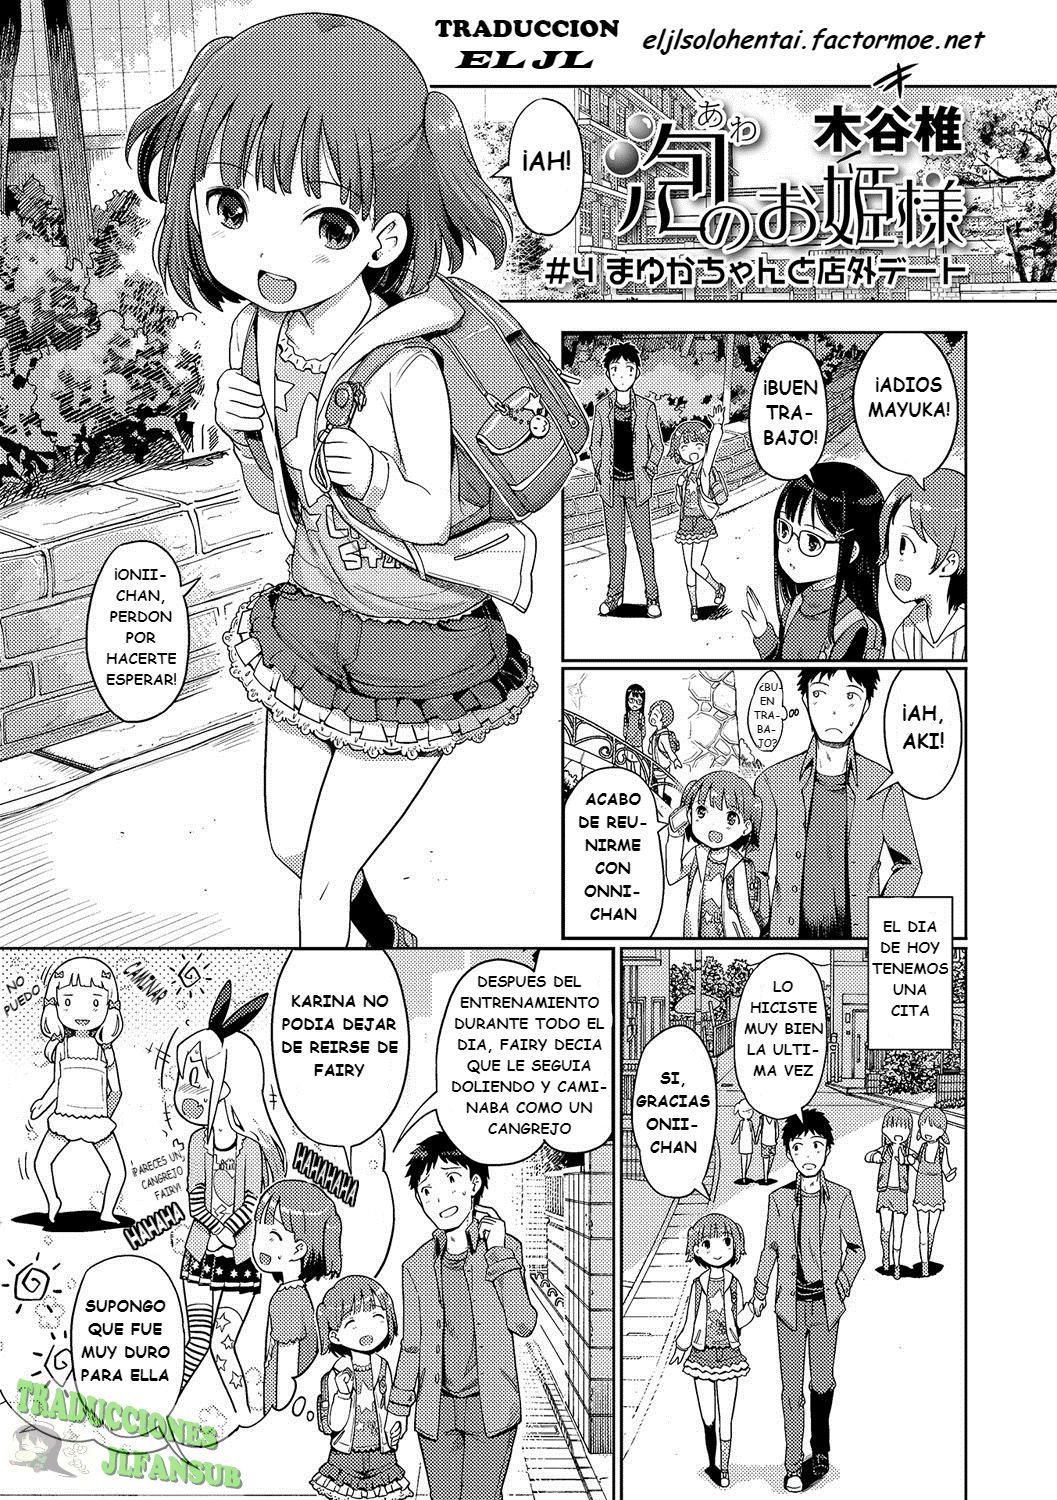 Bubble Princess #4 Date with Mayuka - 0